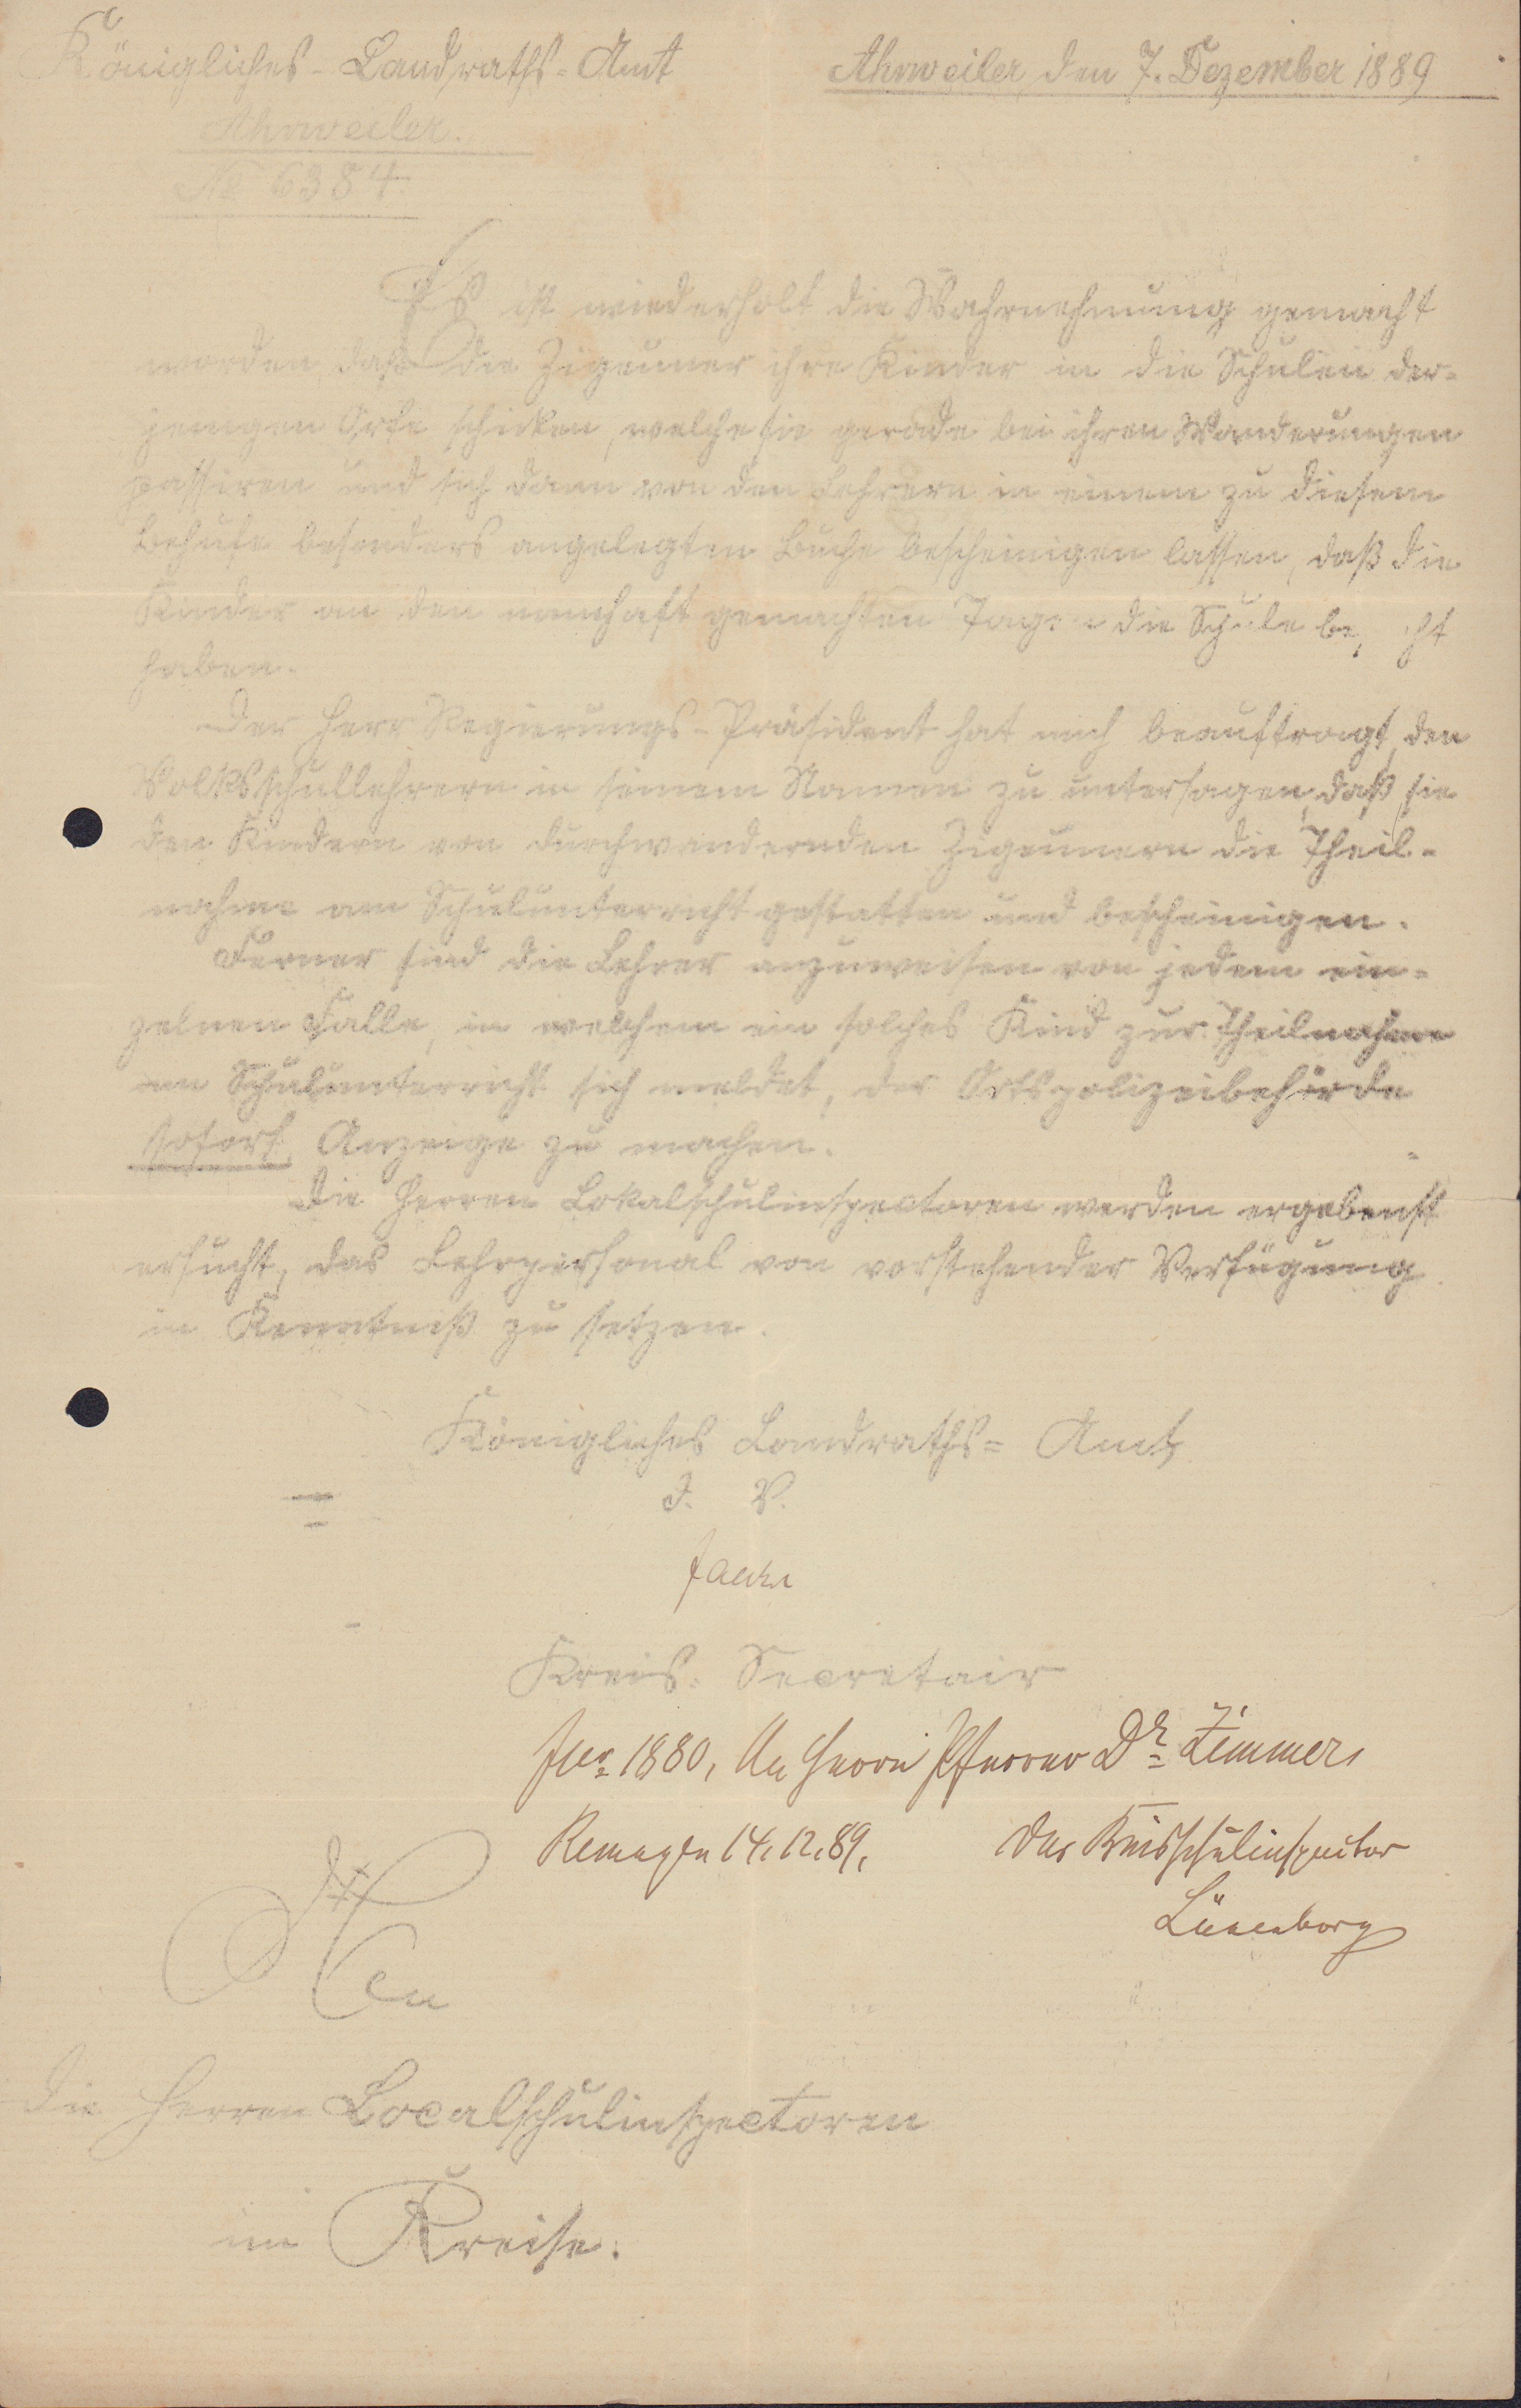 Anordnung des Königlichen Landratsamtes vom 7. Dezember 1889, die untersagt die Unterrichtung von schulpfichtigen Kindern von auf der Wanderung befind (Heimatarchiv Bad Bodendorf CC BY-NC-SA)